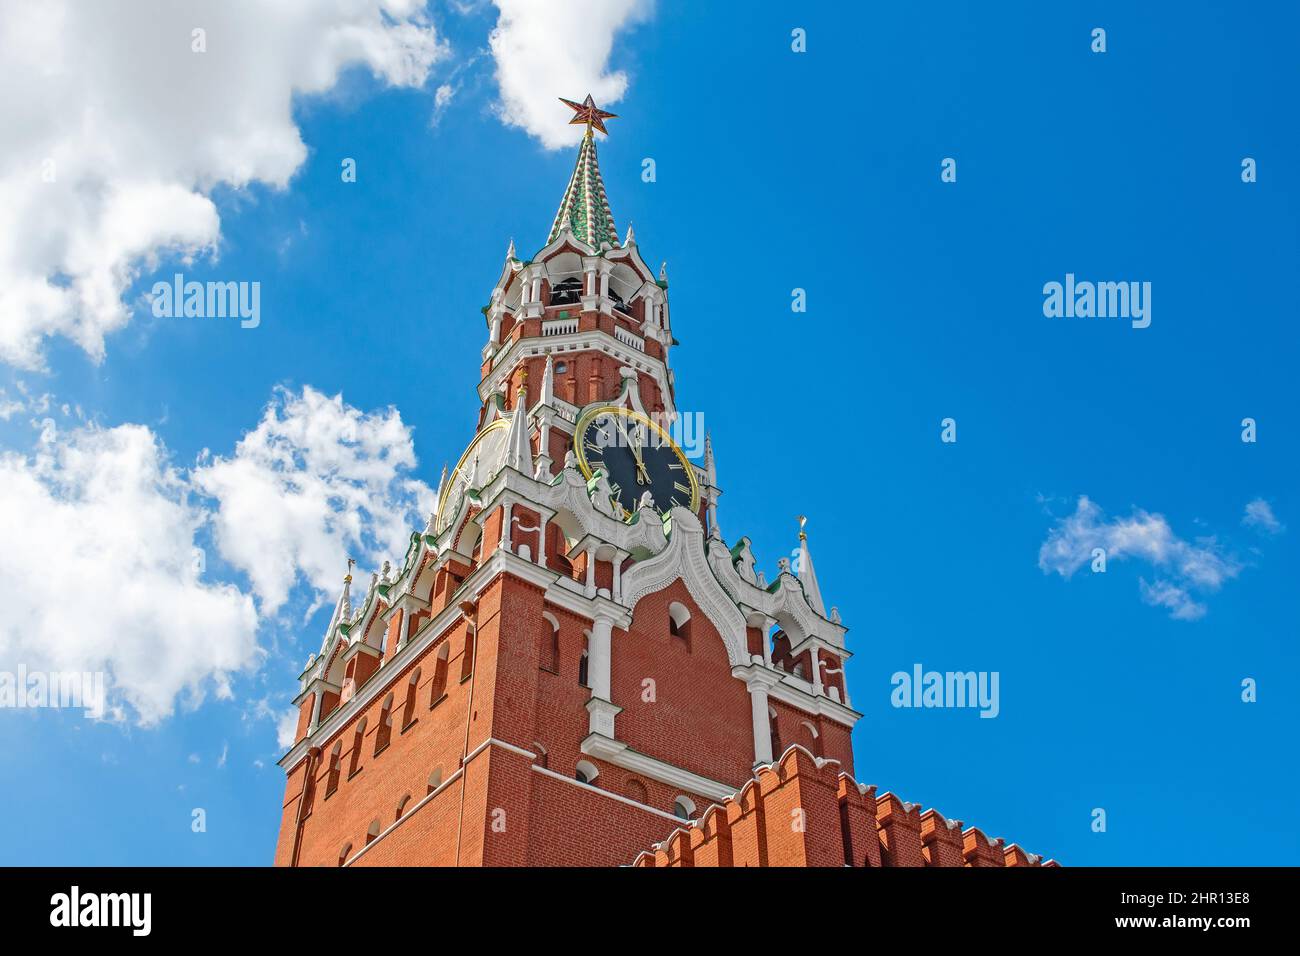 Die Glockenuhr des Spasskaya-Turms des Moskauer Kremls Stockfoto